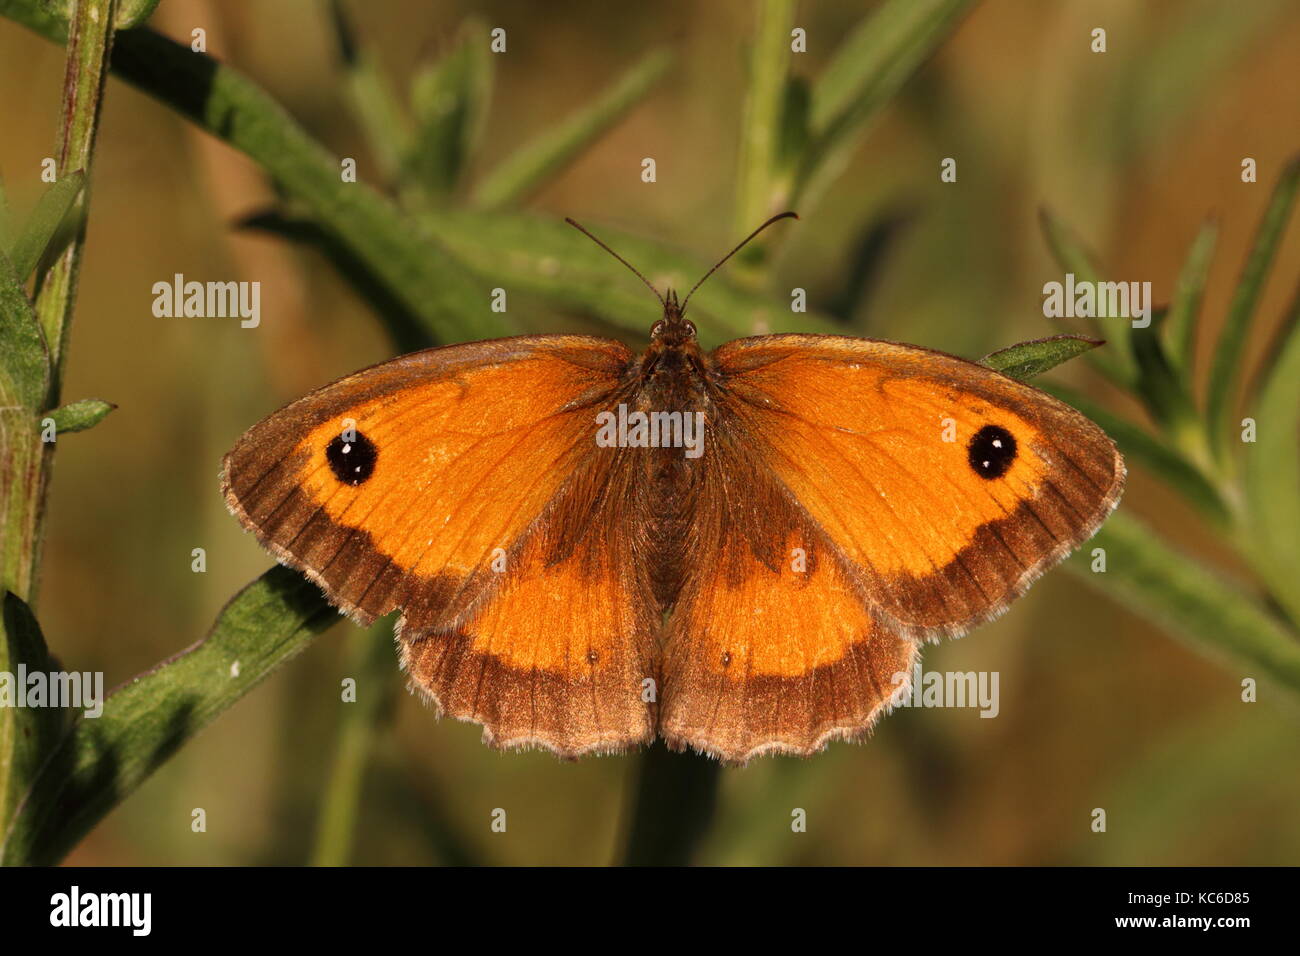 Female Gatekeeper butterfly Stock Photo